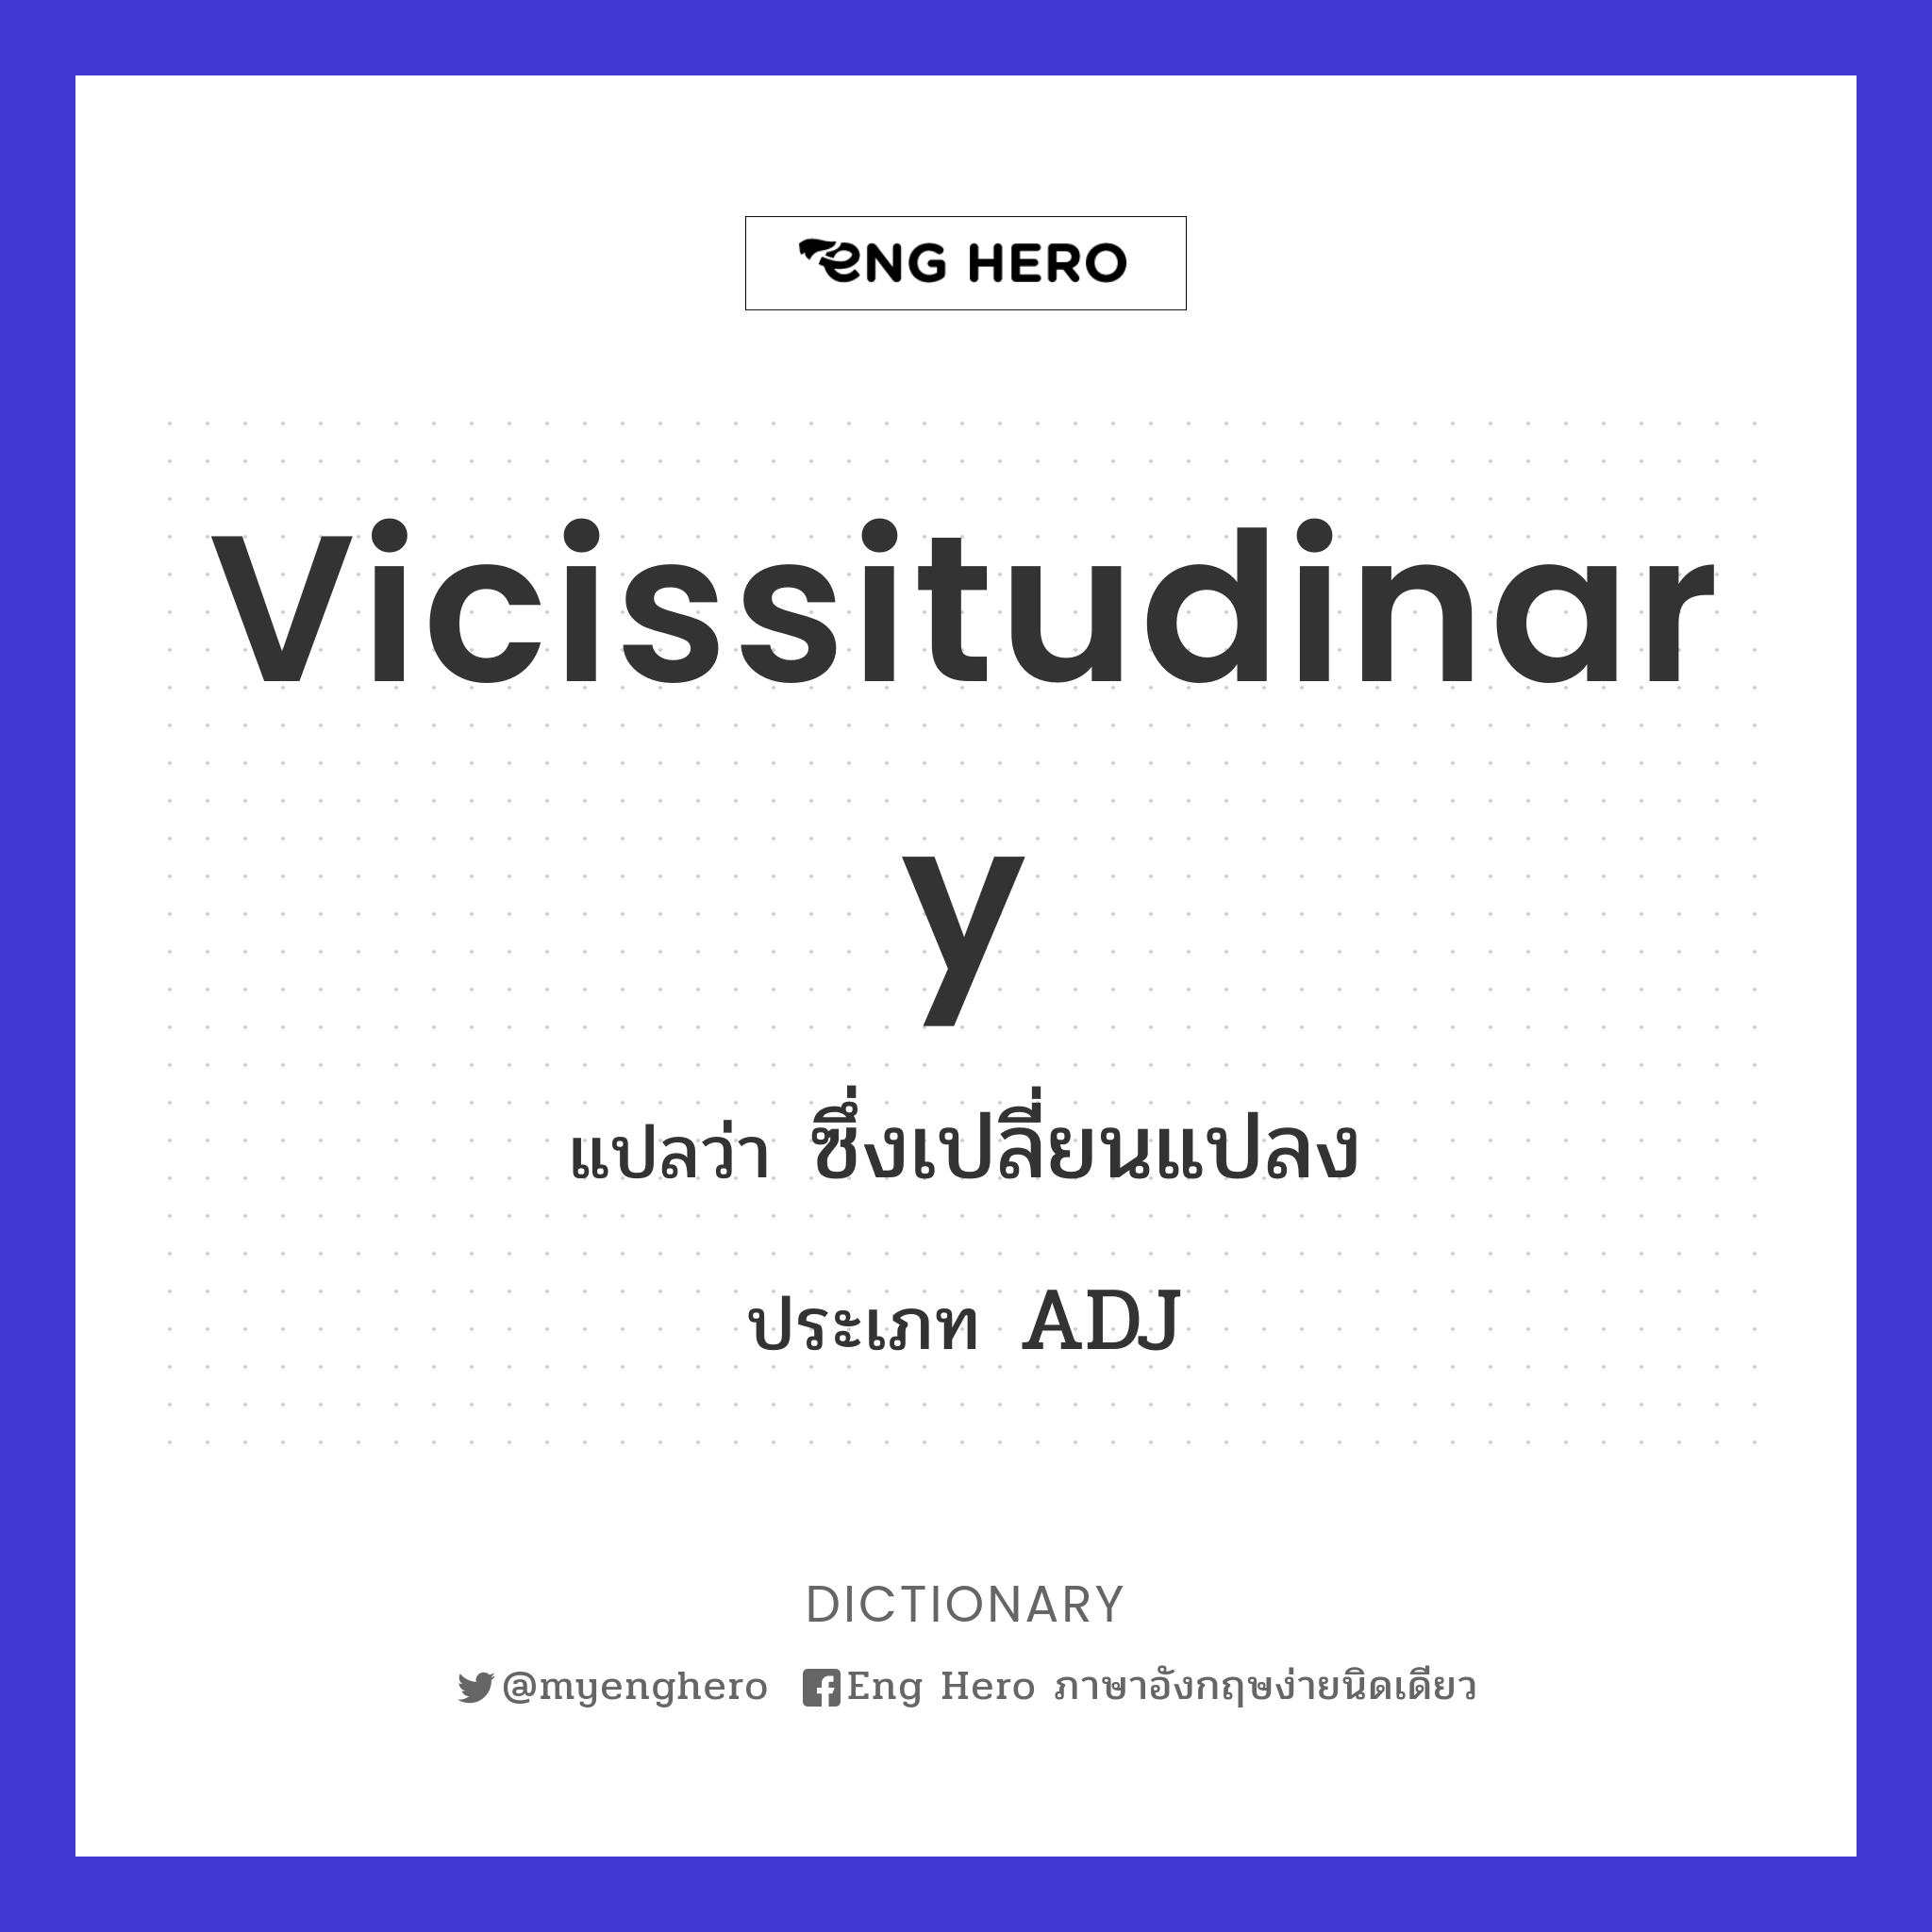 vicissitudinary